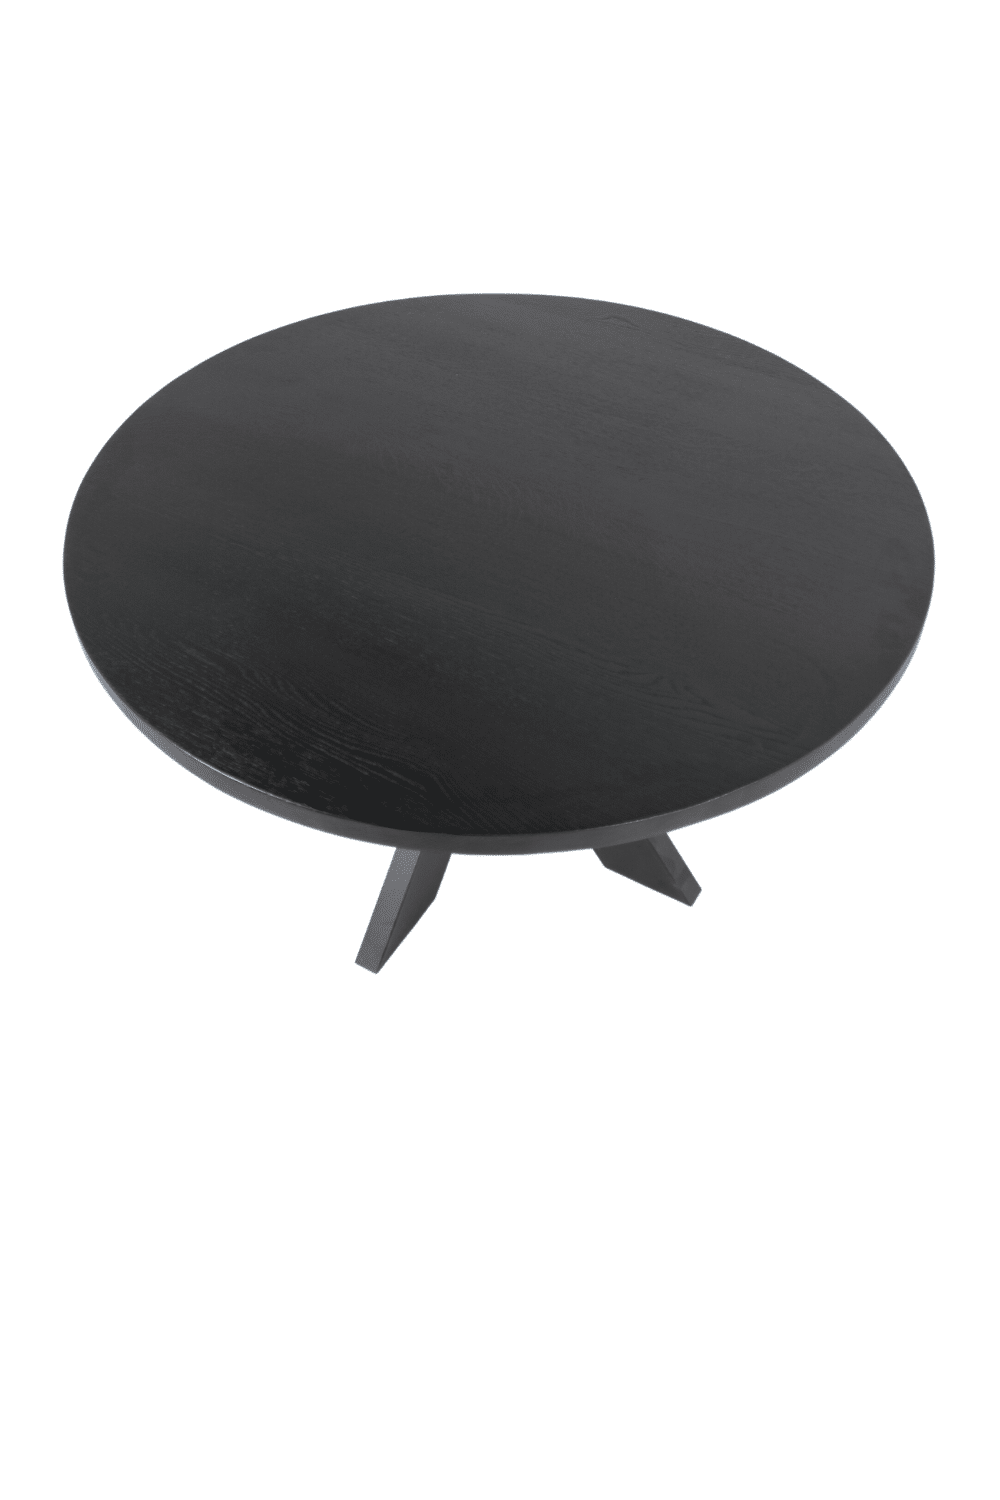 zwarte ronde eiken houten tafel 140 cm